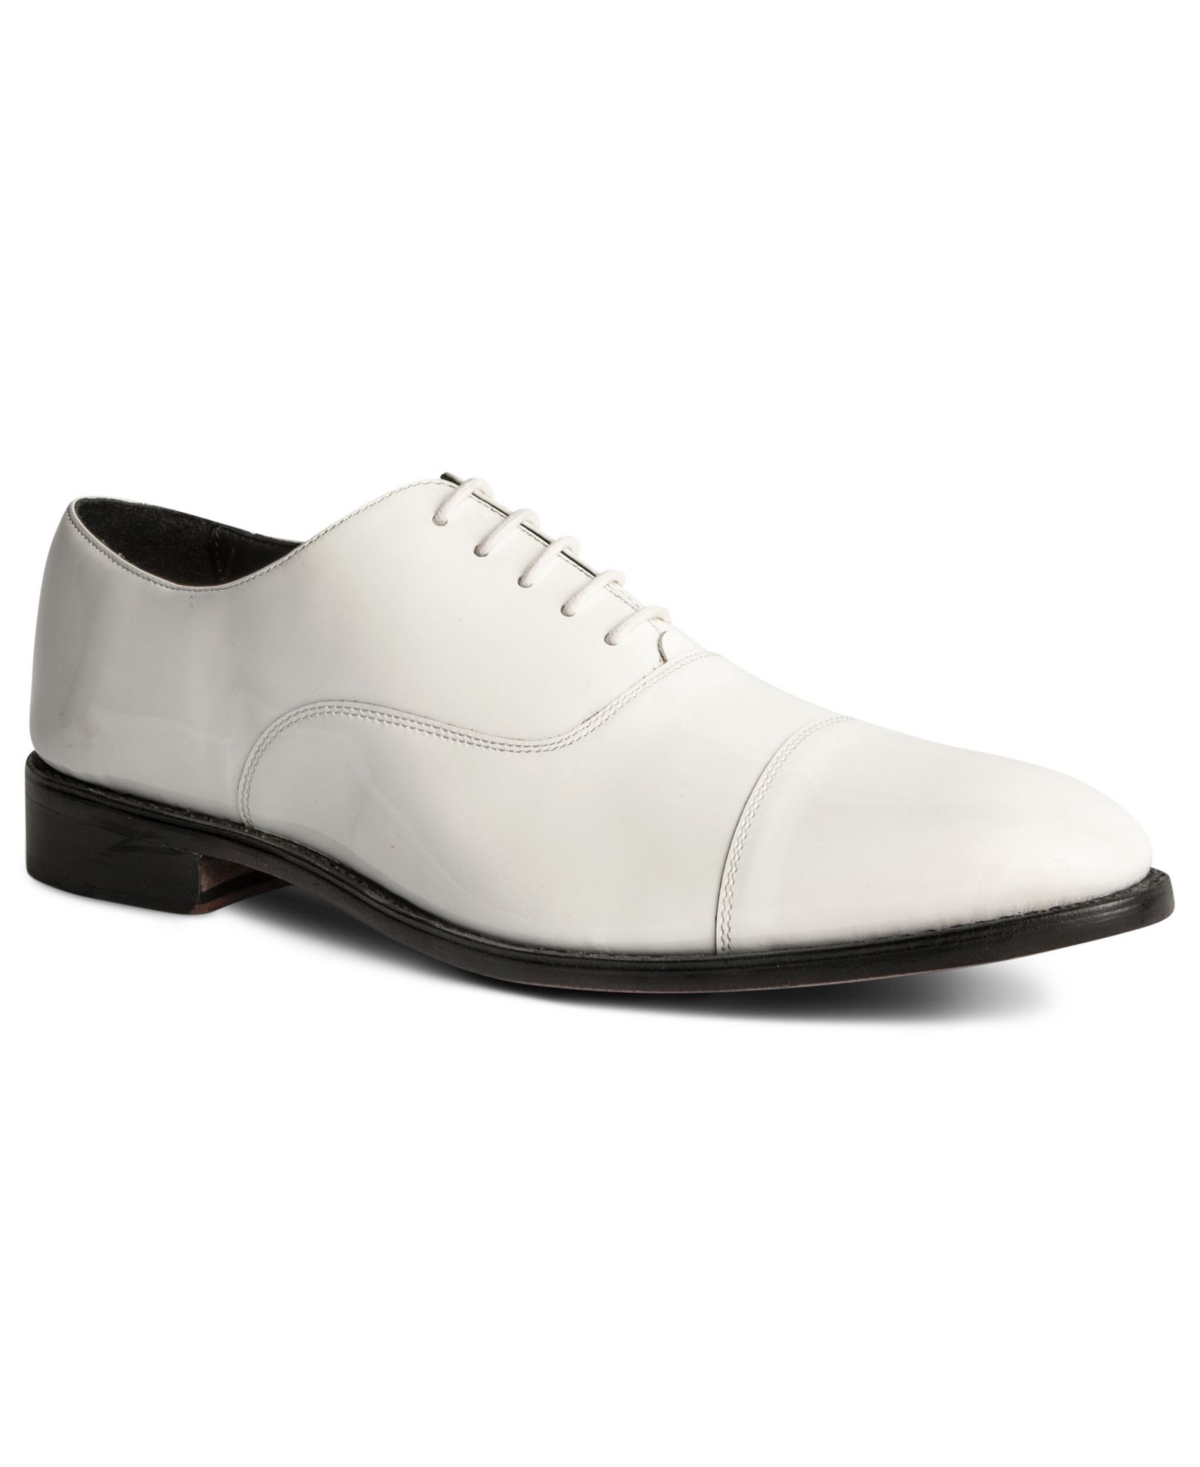 Men's Clinton Tux Cap-Toe Oxford Dress Shoes - White